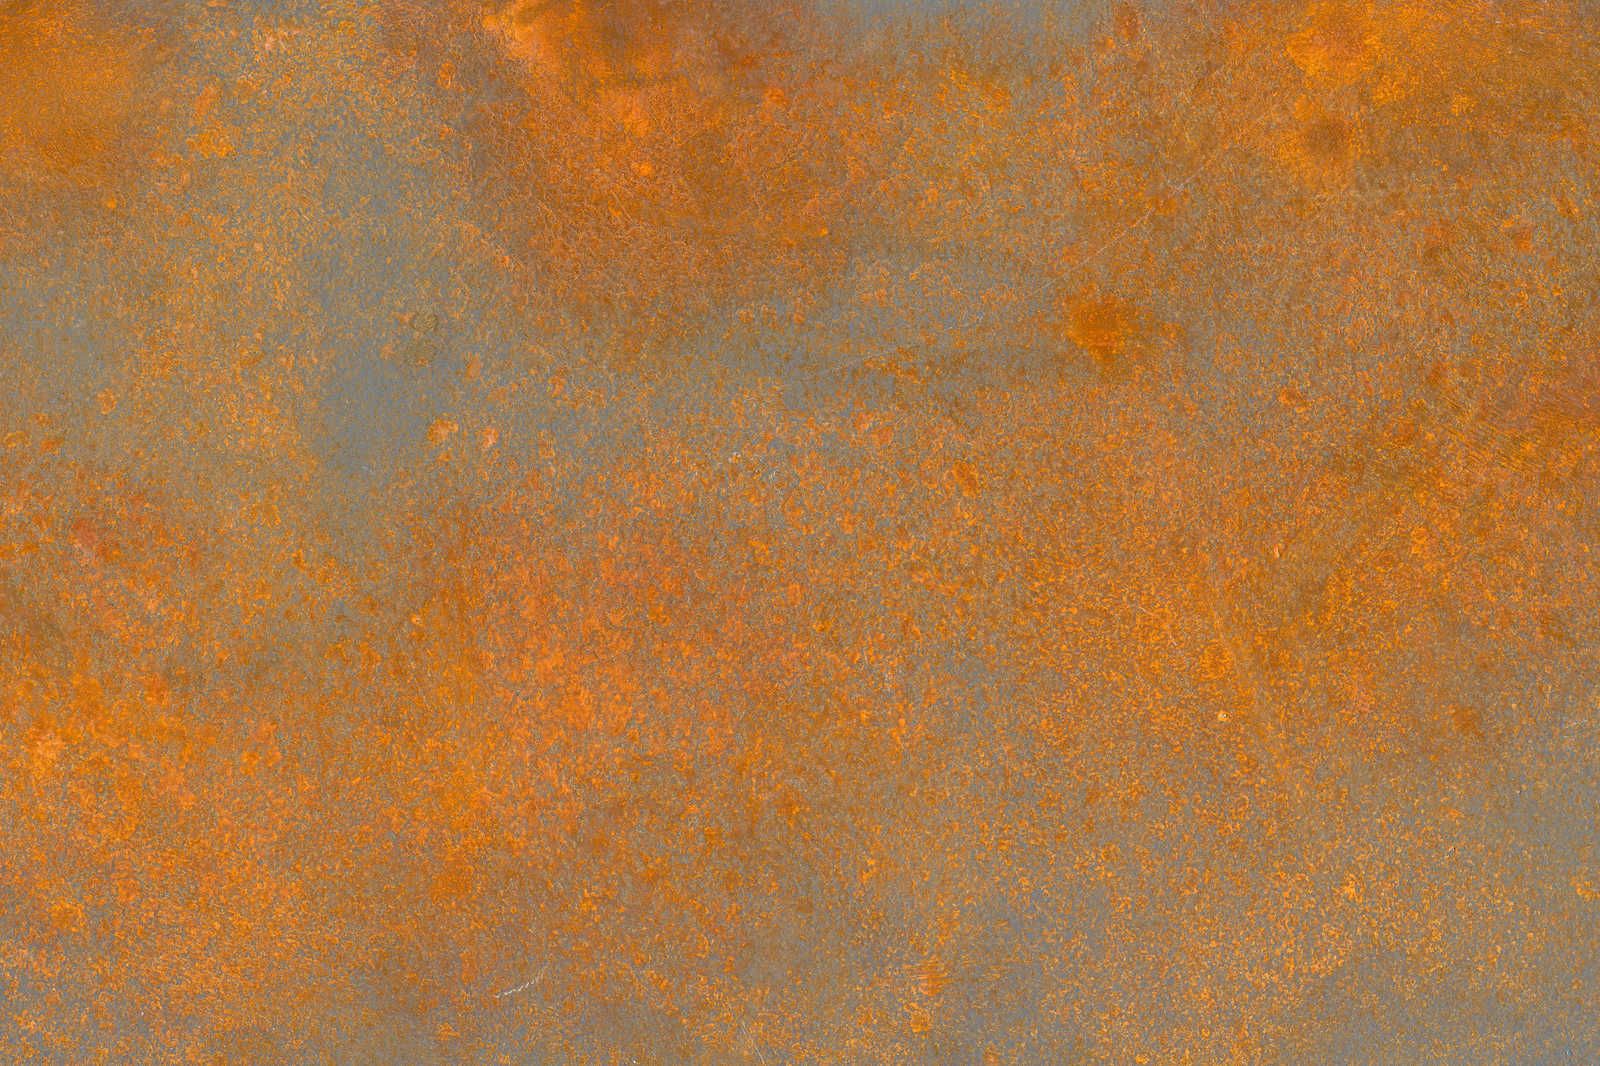             Ottica Ruggine Pittura su tela arancione marrone con aspetto usato - 0,90 m x 0,60 m
        